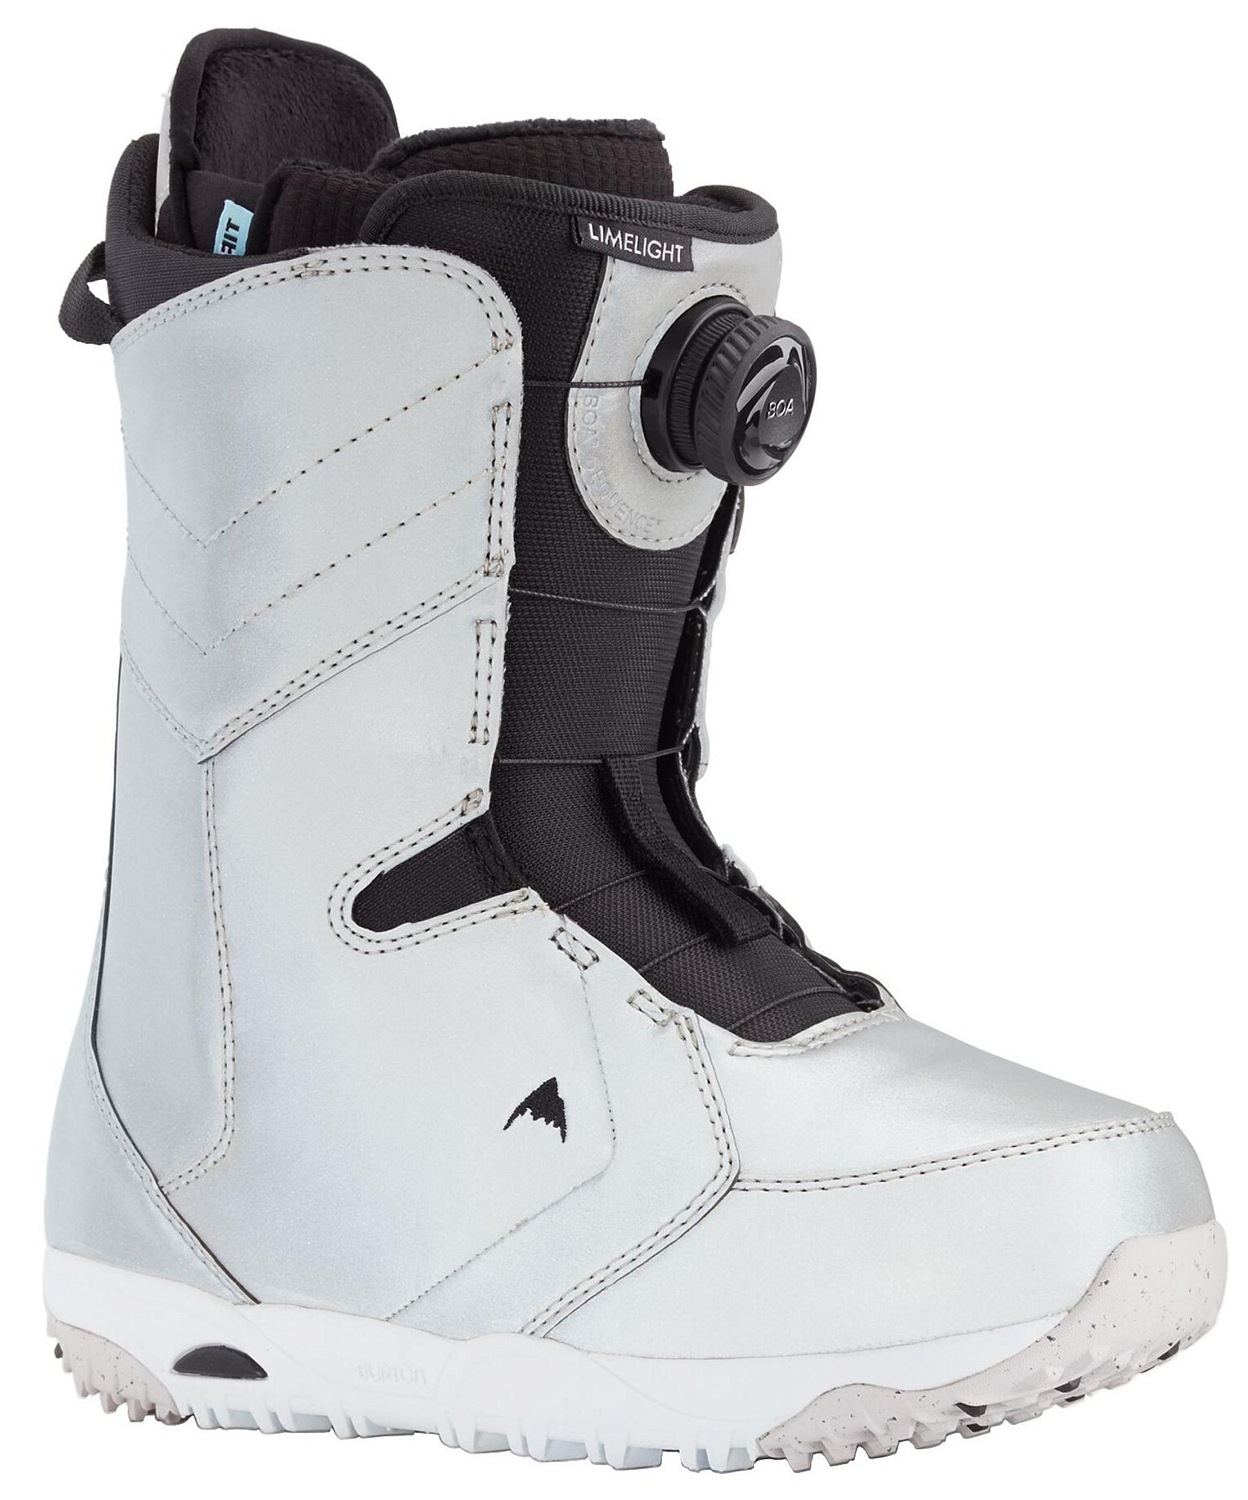 Ботинки для сноуборда BURTON 2020-21 Limelight Boa Gray reflective